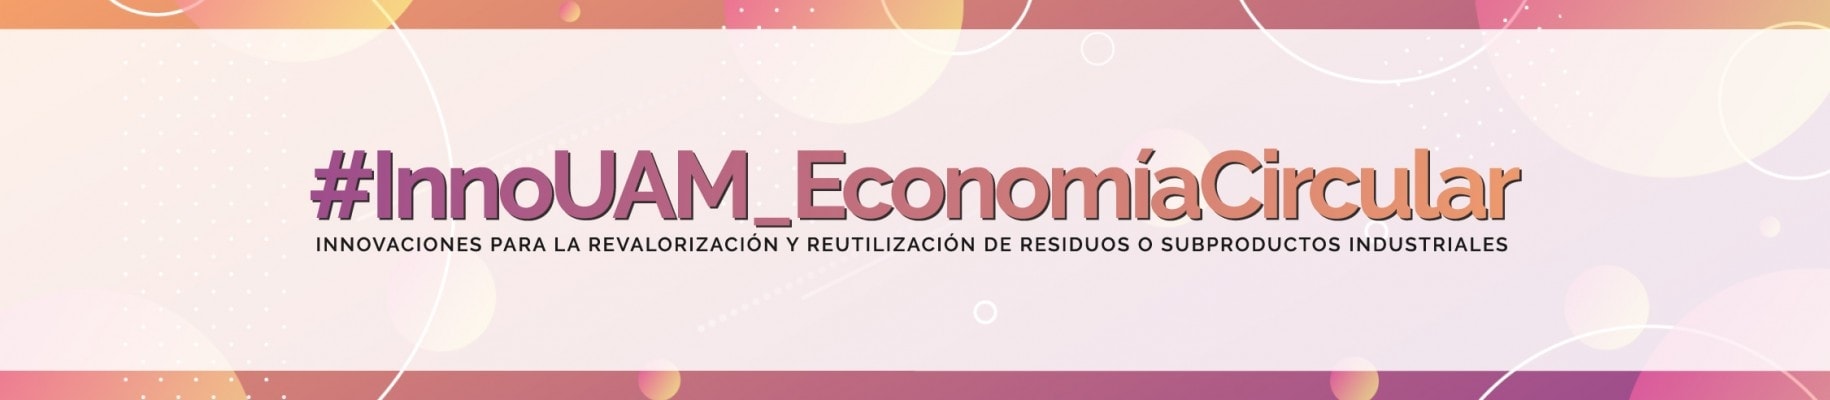 Logo con el nombre del evento sobre economía circular en el que participa Ferrovial Servicios en la Universidad complutense de madrid